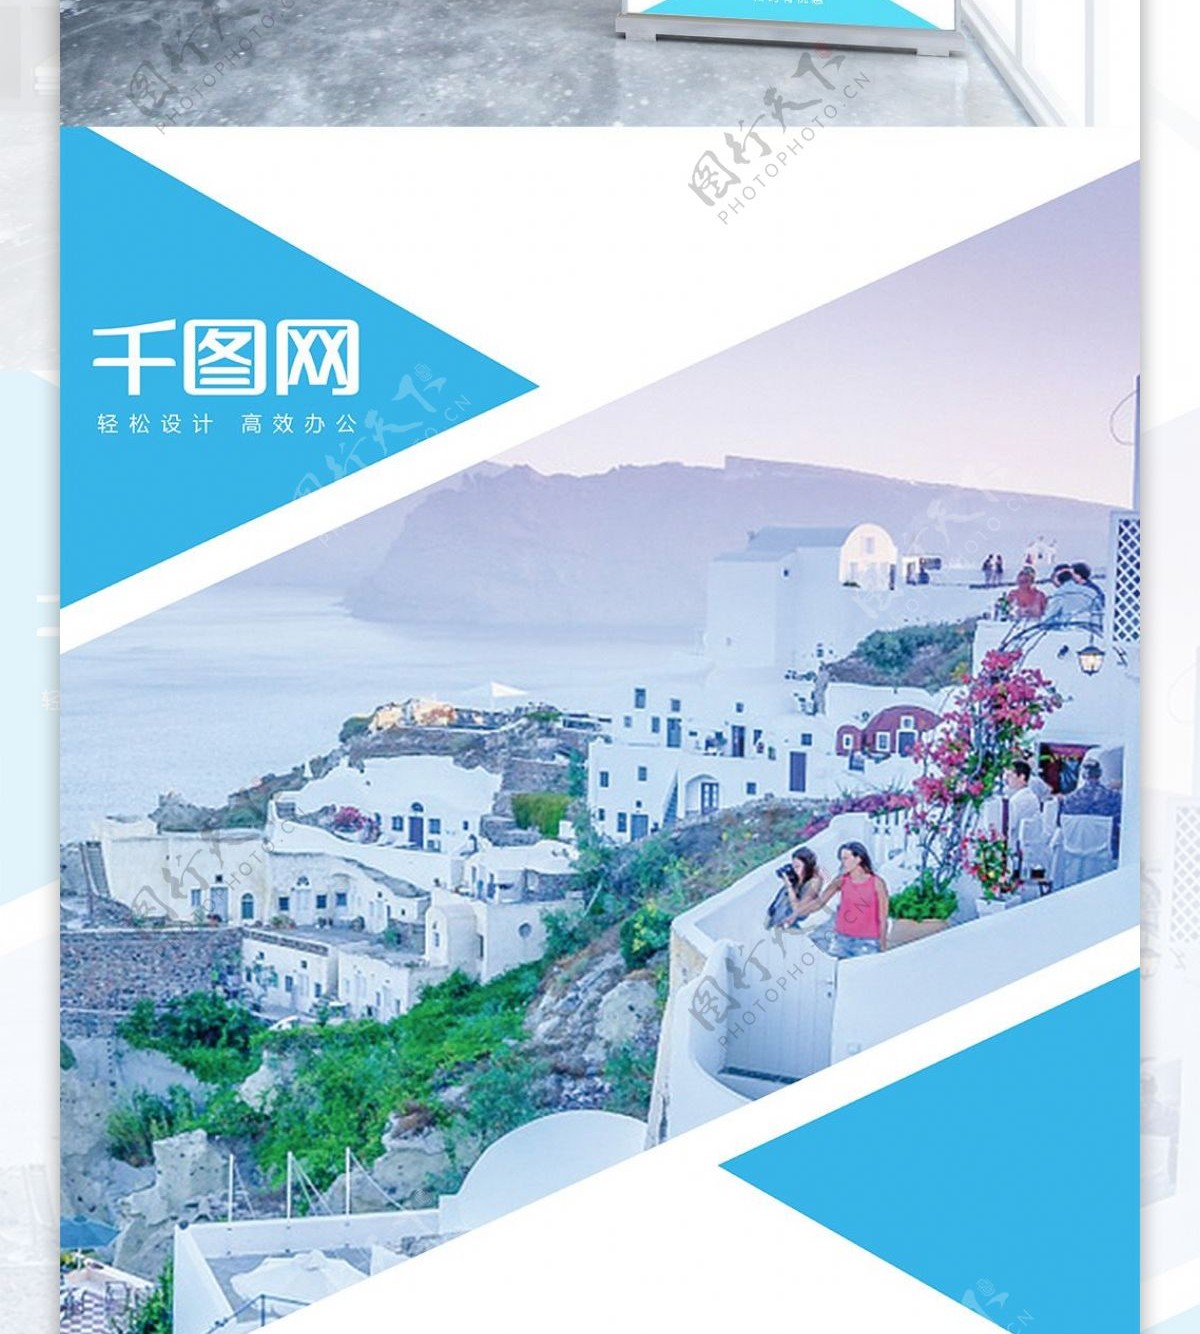 蓝色清新国庆中秋旅游旅行社宣传展架